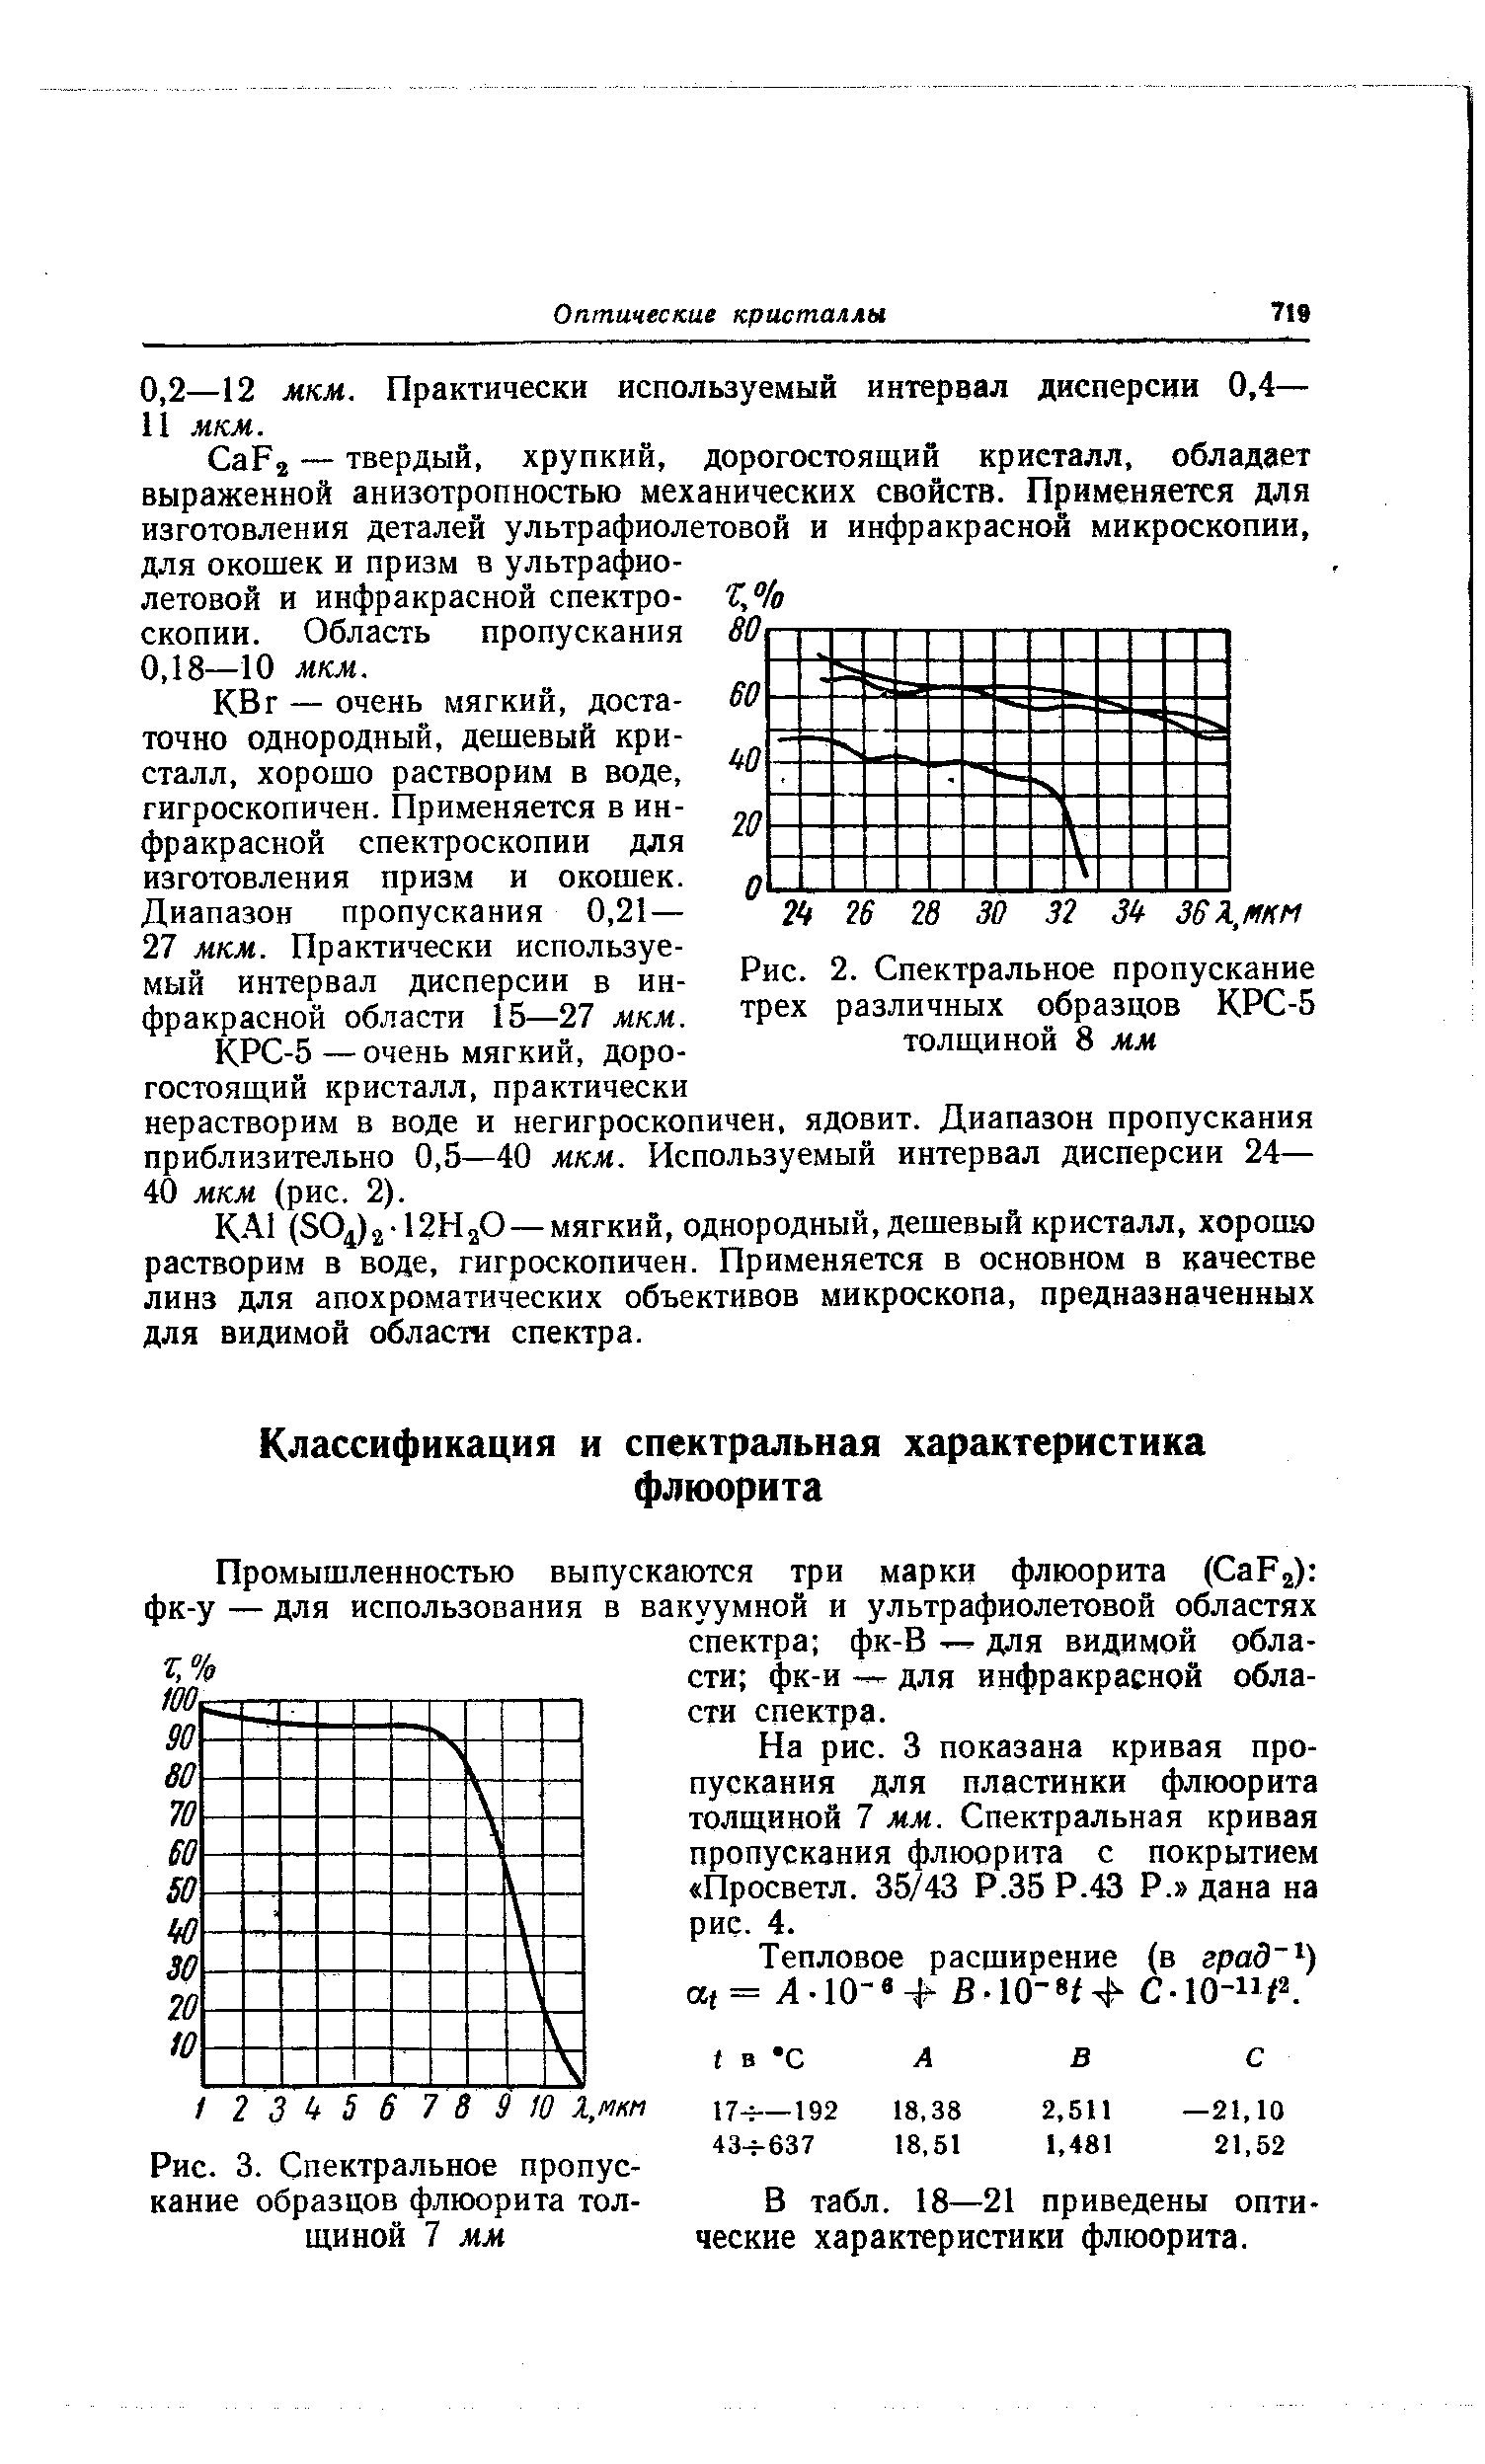 Рис. 2. Спектральное пропускание трех различных образцов КРС-5 толщиной 8 мм
